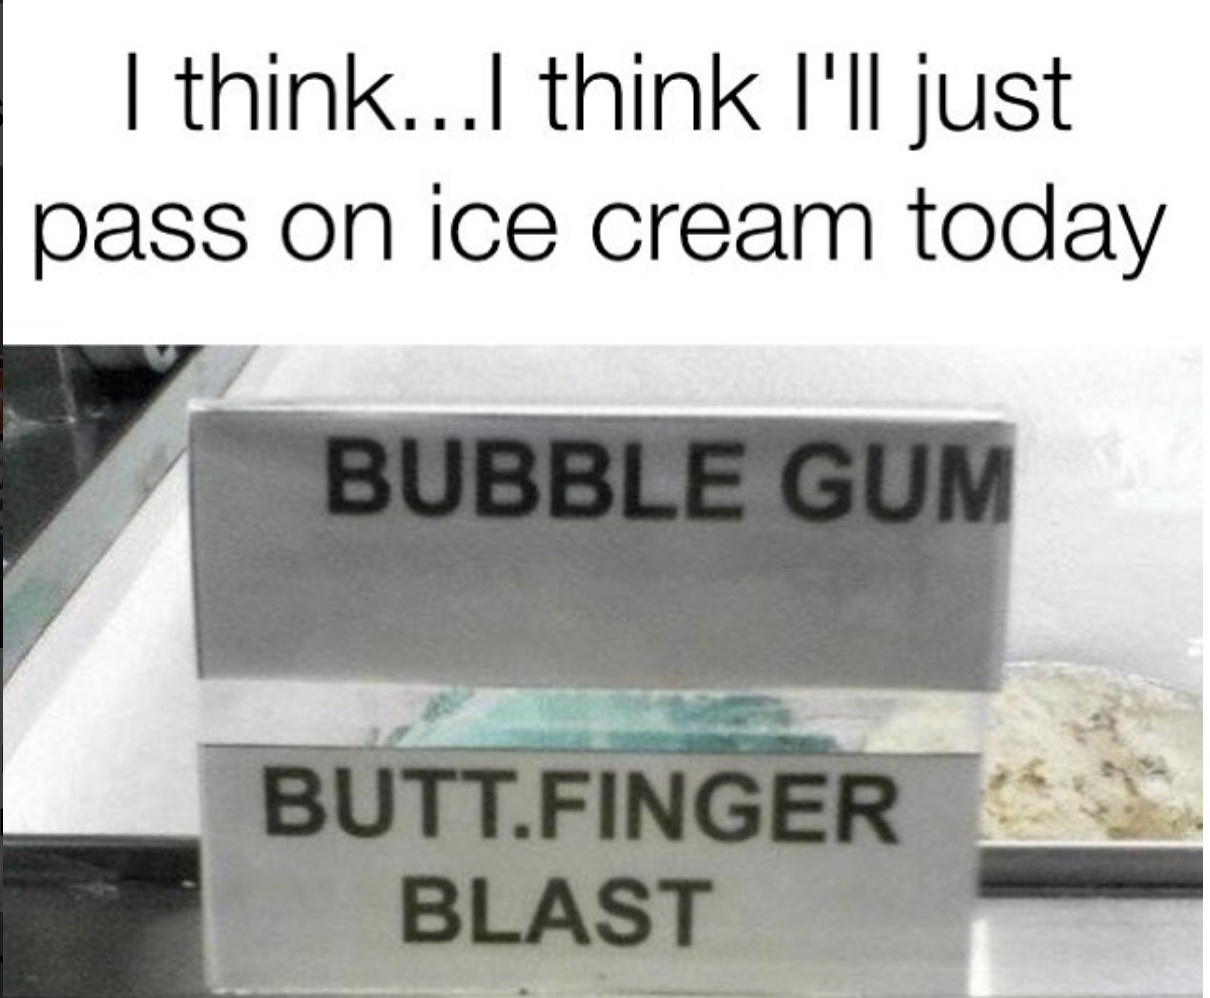 butt finger blast ice cream